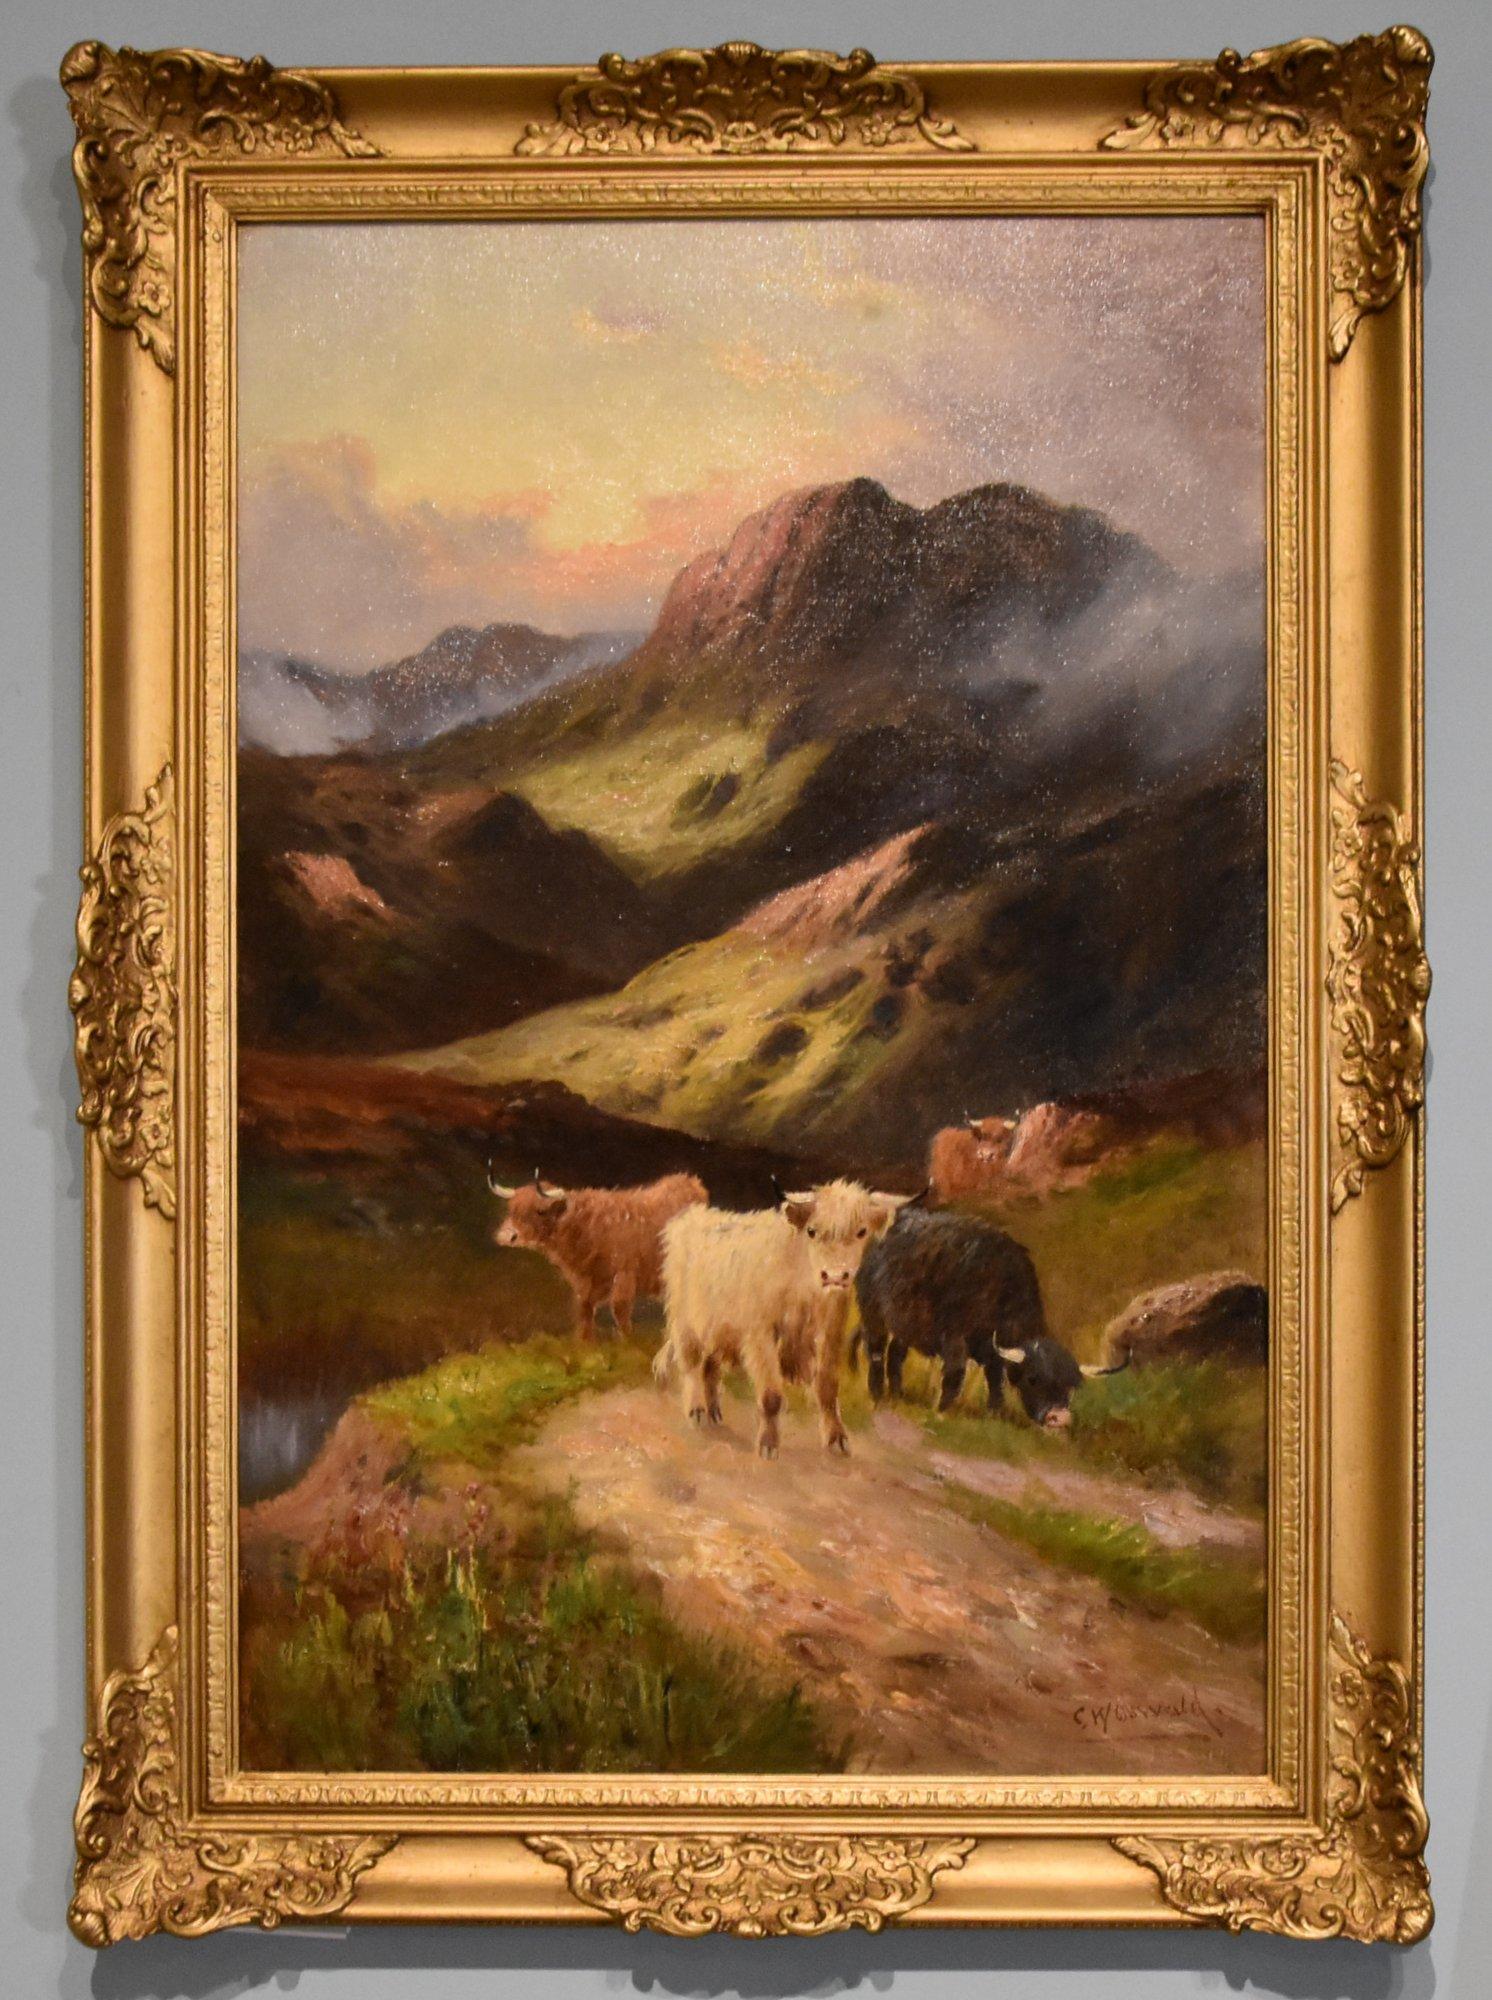 Peinture à l'huile de Charles Walter Oswald "Evening in the Glen" Né en 1850, il s'épanouit en 1900. Peintre de Liverpool représentant le bétail des Highlands et les chevaux de trait. Il a été exposé à la Walker Art Gallery et fait partie de la